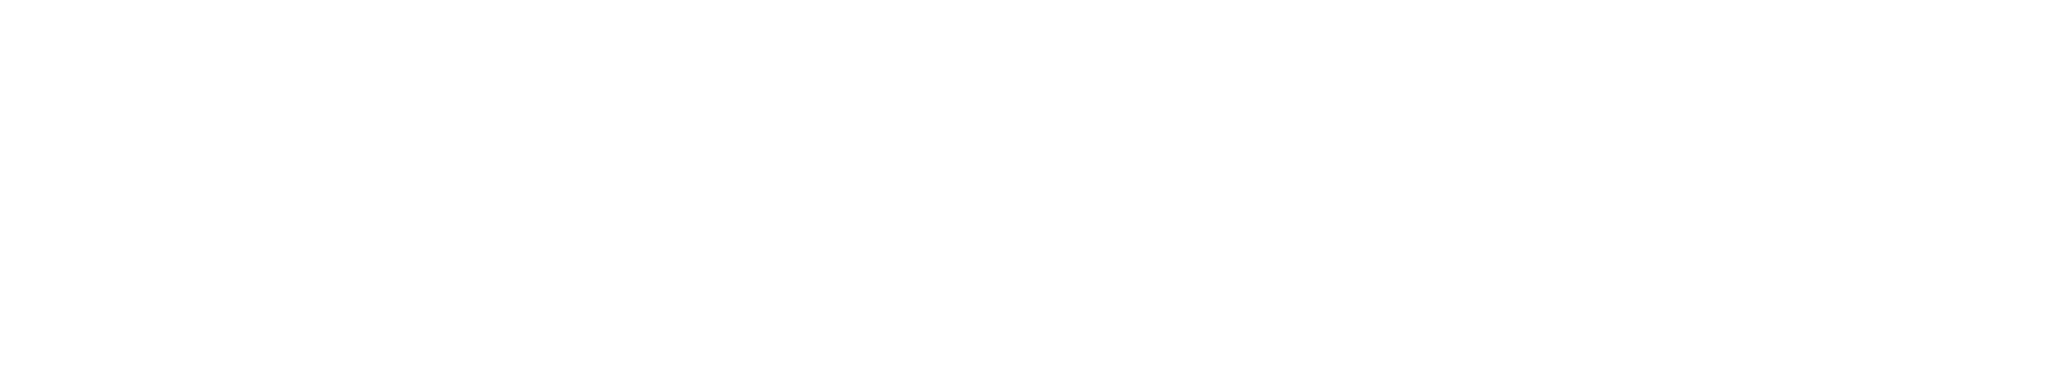 v02gym-logo